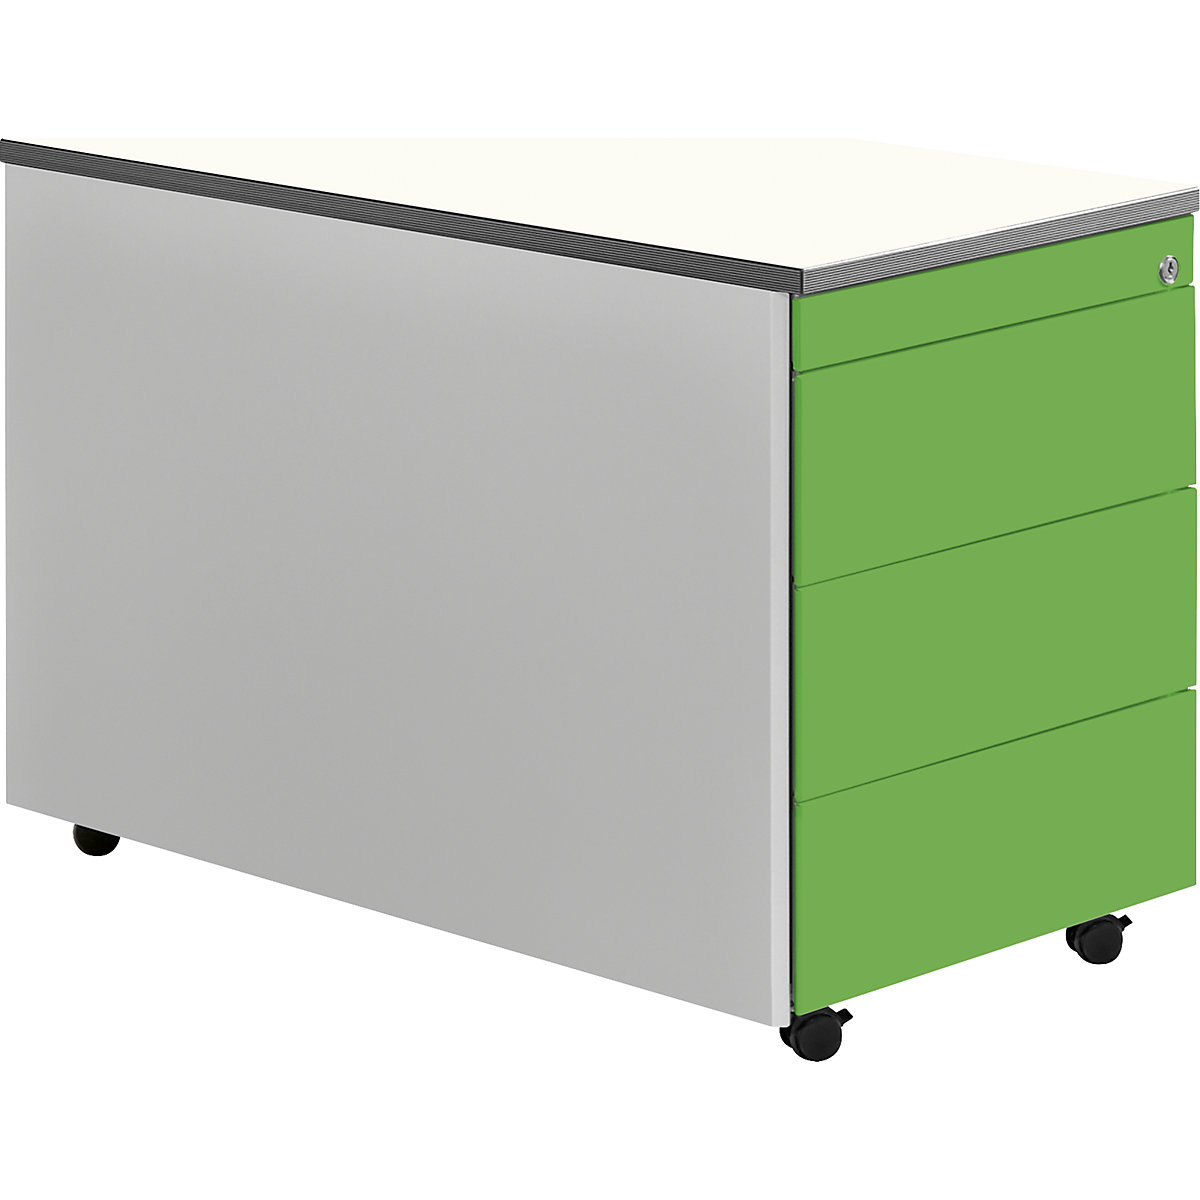 mauser – Casetieră cu sertare cu role, î. x ad. 579 x 800 mm, blat din plastic, 3 sertare, alb aluminiu / verde gălbui / alb